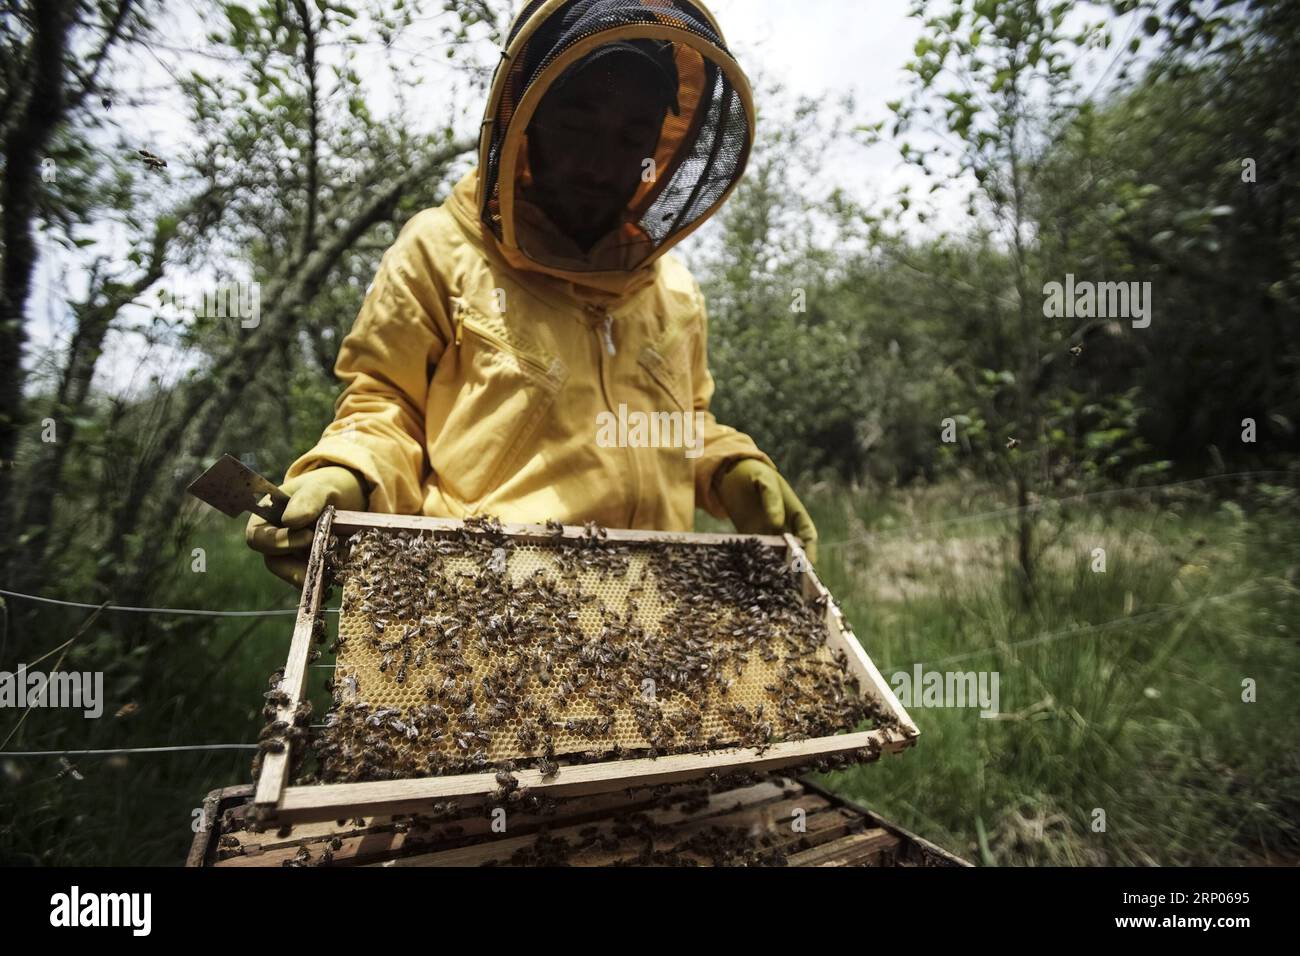 (180422) -- GUASCA, le 22 avril 2018 -- l'apiculteur Fabio Ruiz travaille dans la réserve naturelle Montiel de Guasca en Colombie, le 18 avril 2018. L'apiculteur Fabio Ruiz a souligné la réduction du nombre d'abeilles dans le monde, appelant à une culture de l'apiculture urbaine. (cr) (vf) COLOMBIE-GUASCA-APICULTURE-JOUR DE LA TERRE JHONxPAZ PUBLICATIONxNOTxINxCHN Banque D'Images